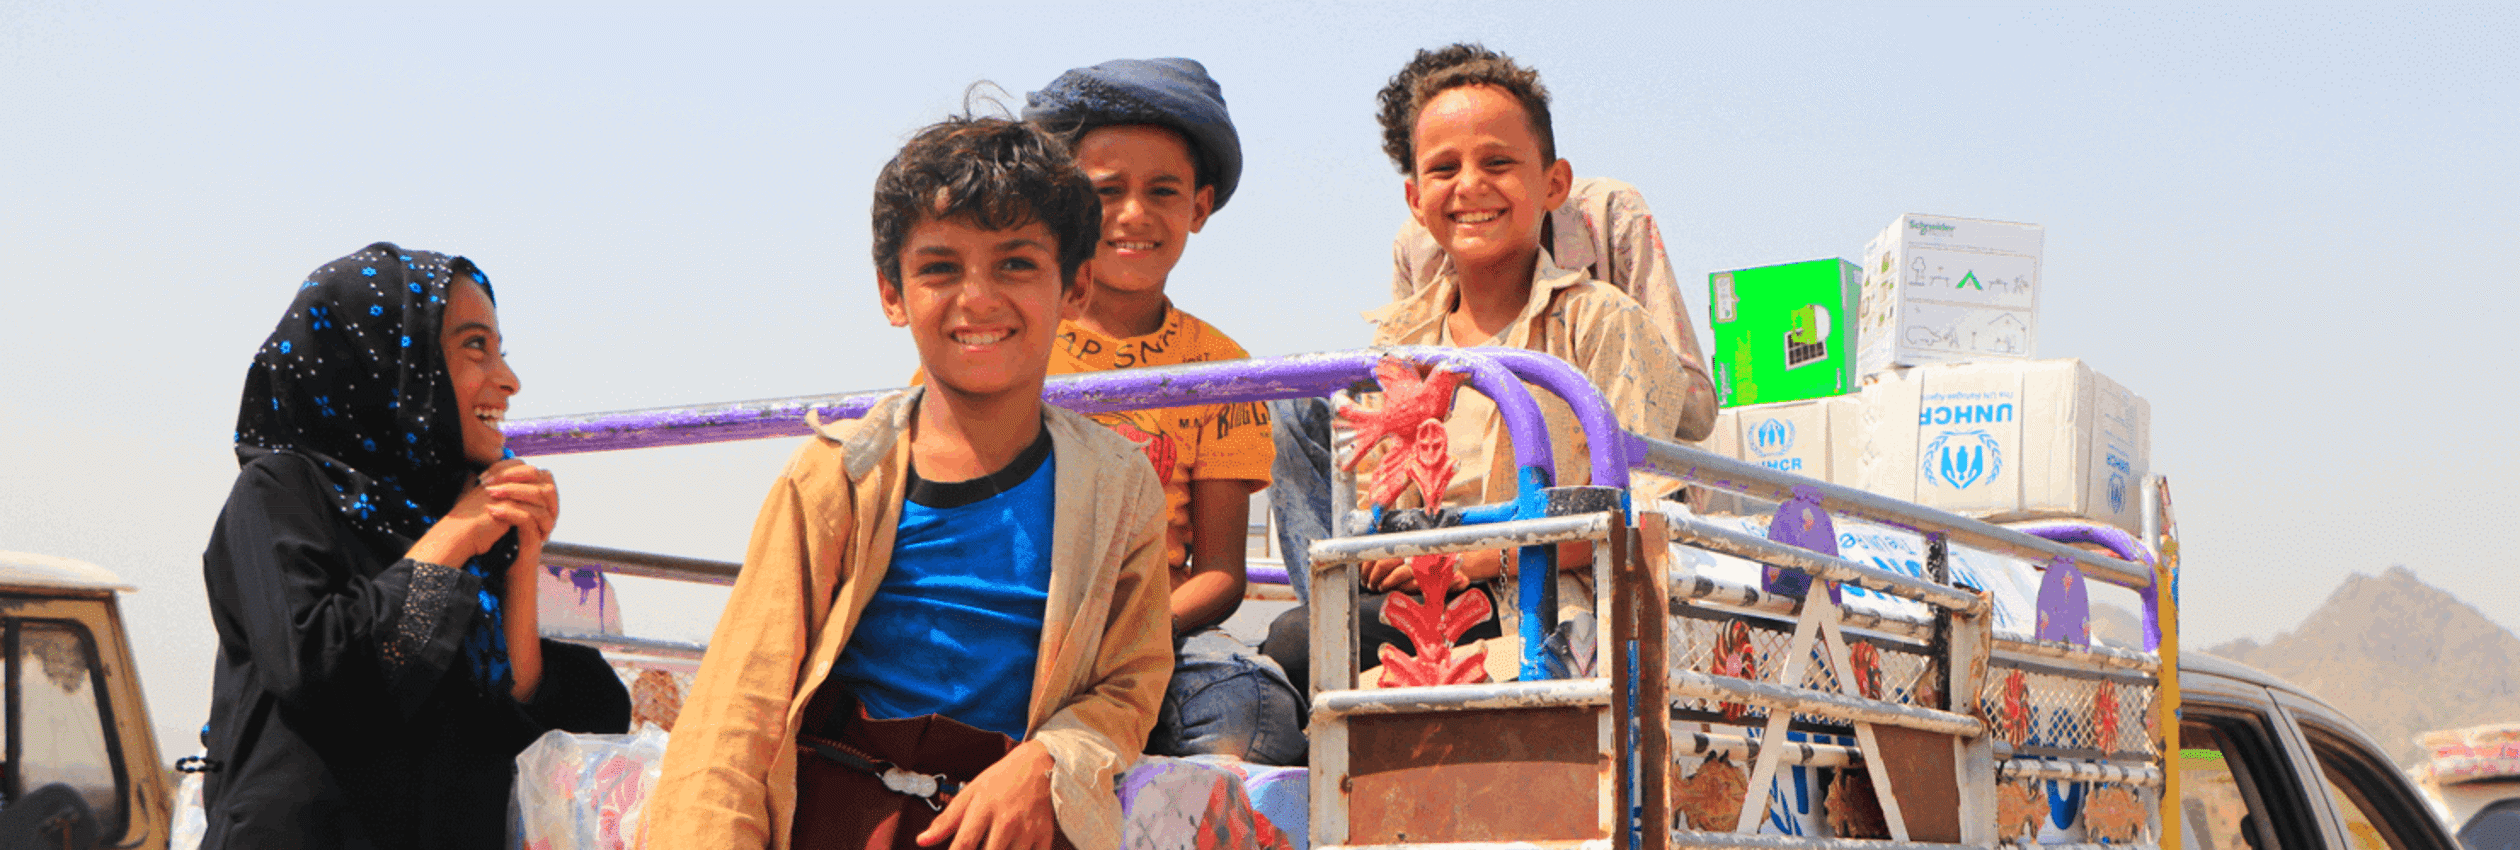 Banner Yemen Children On Truck With Unhcr Supplies (1)